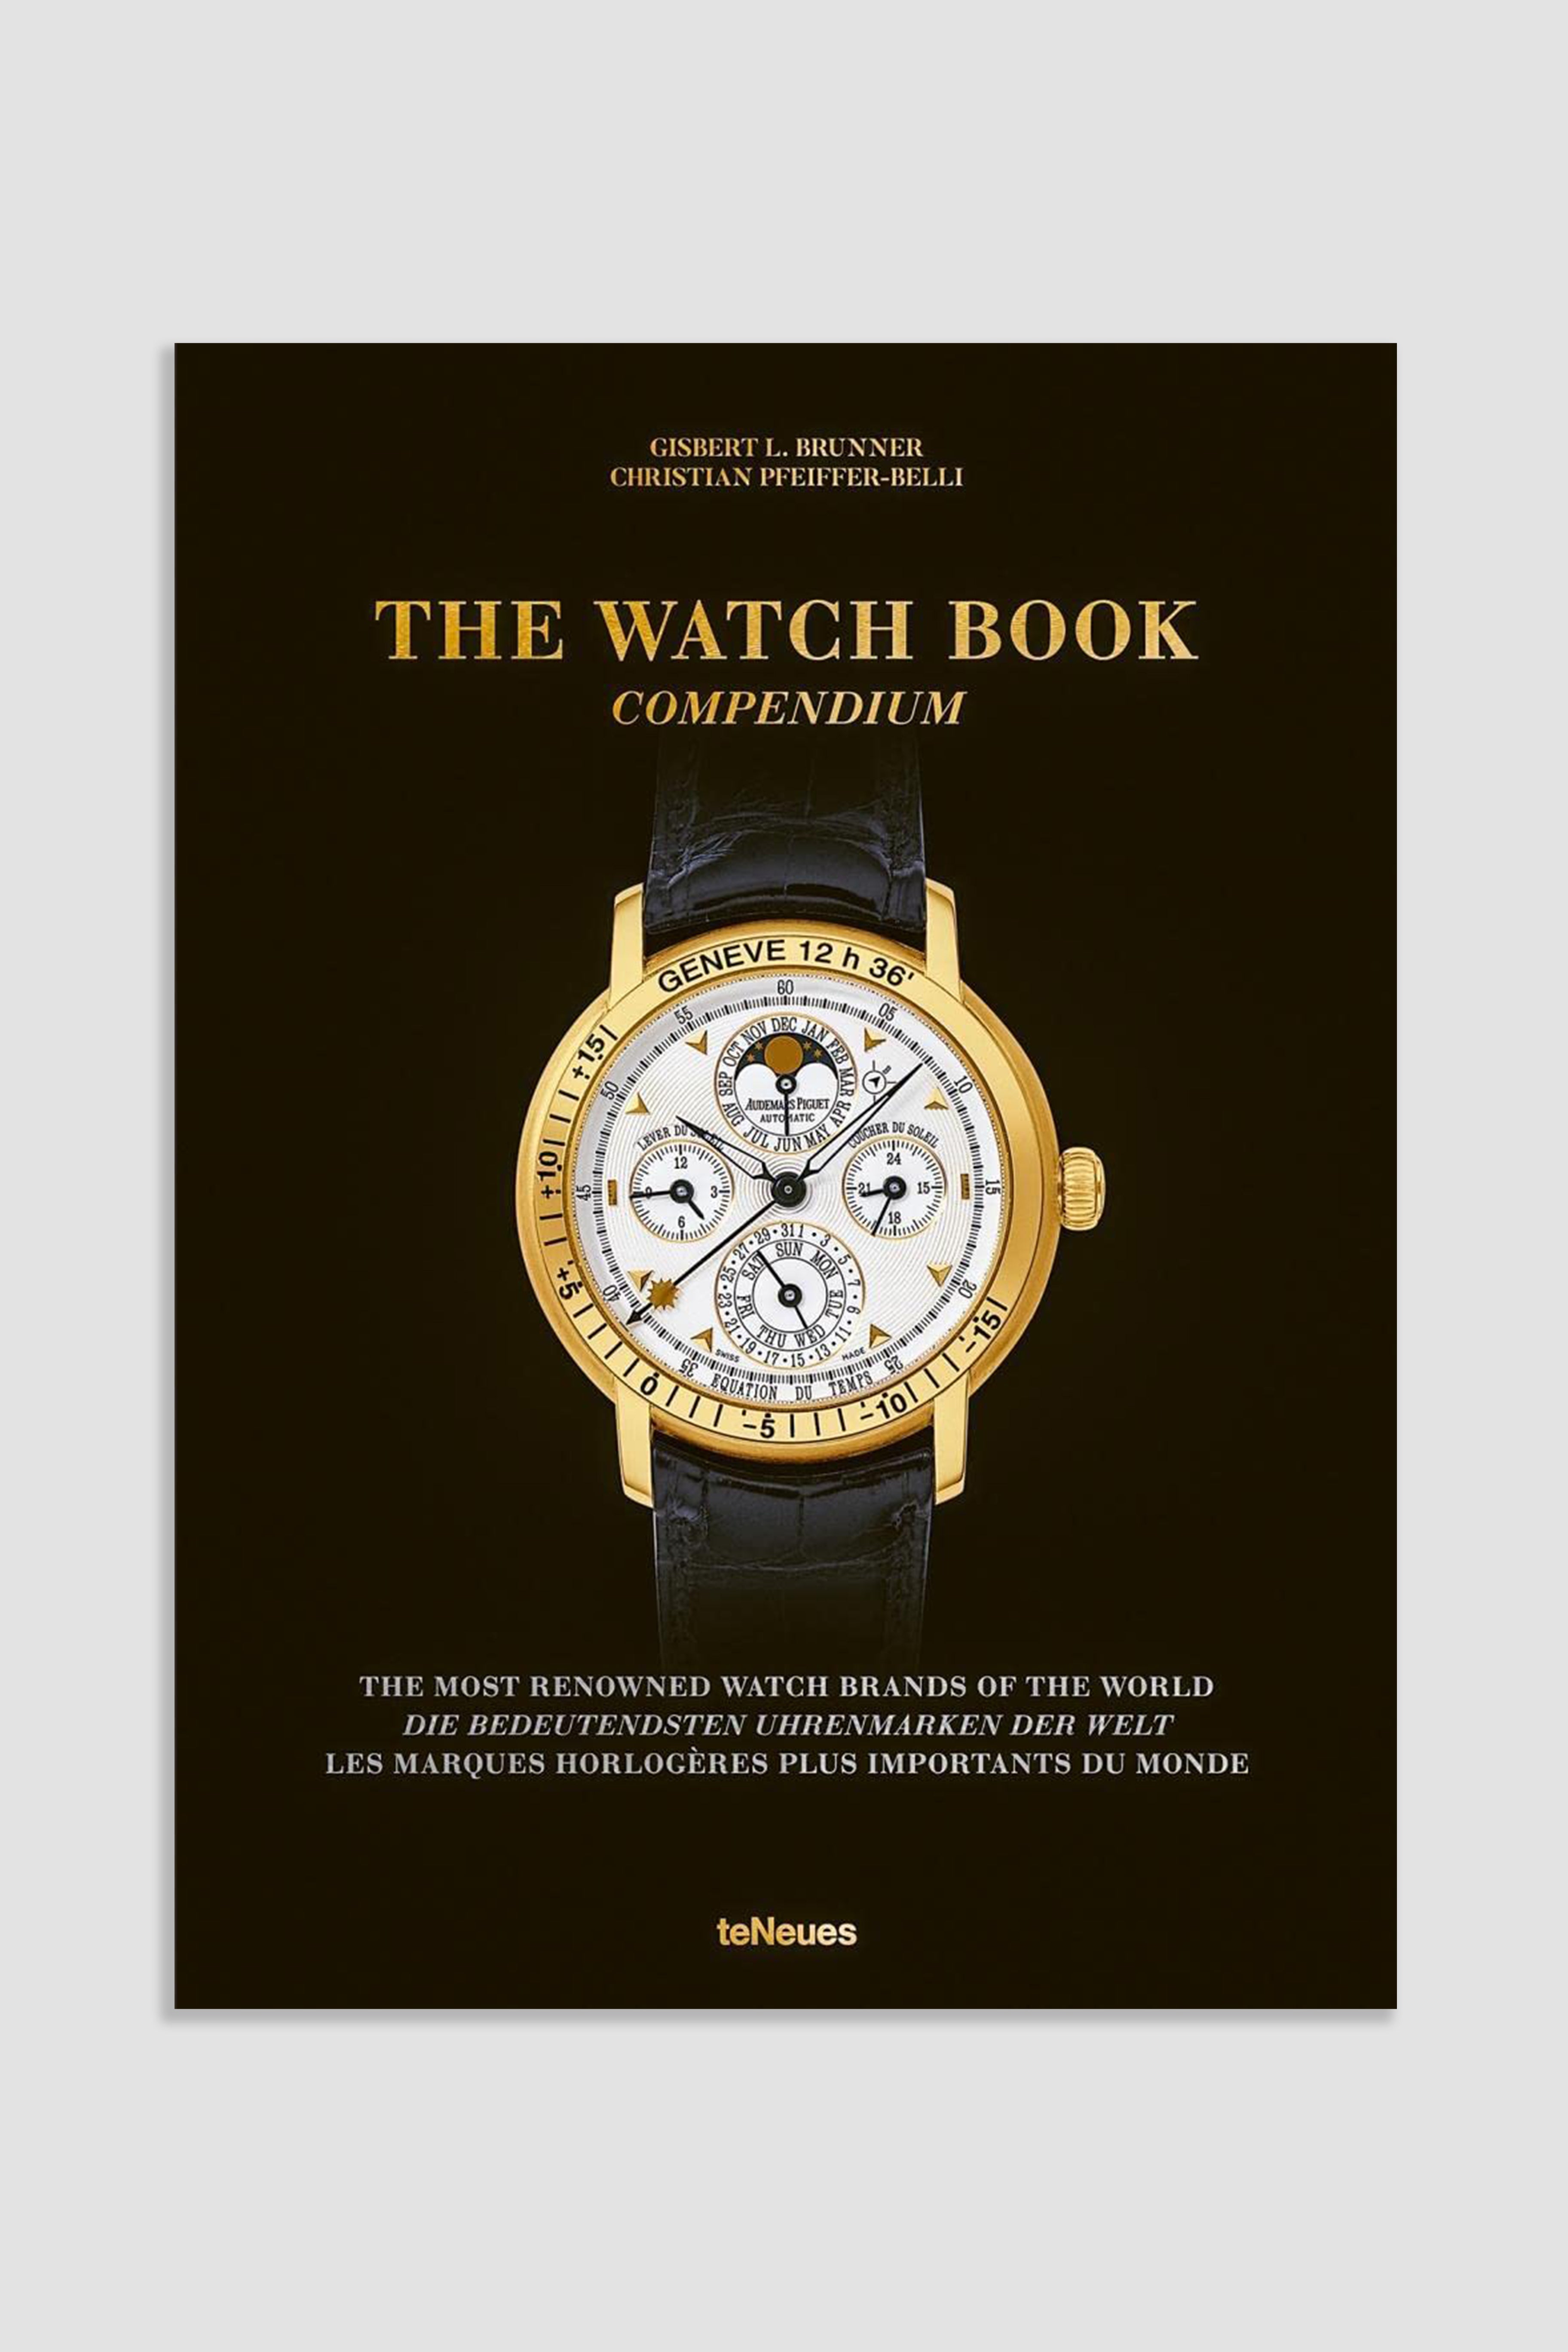 The Watch Book: Compendium by Gisbert Brunner & Christian Pfeiffer-Belli 